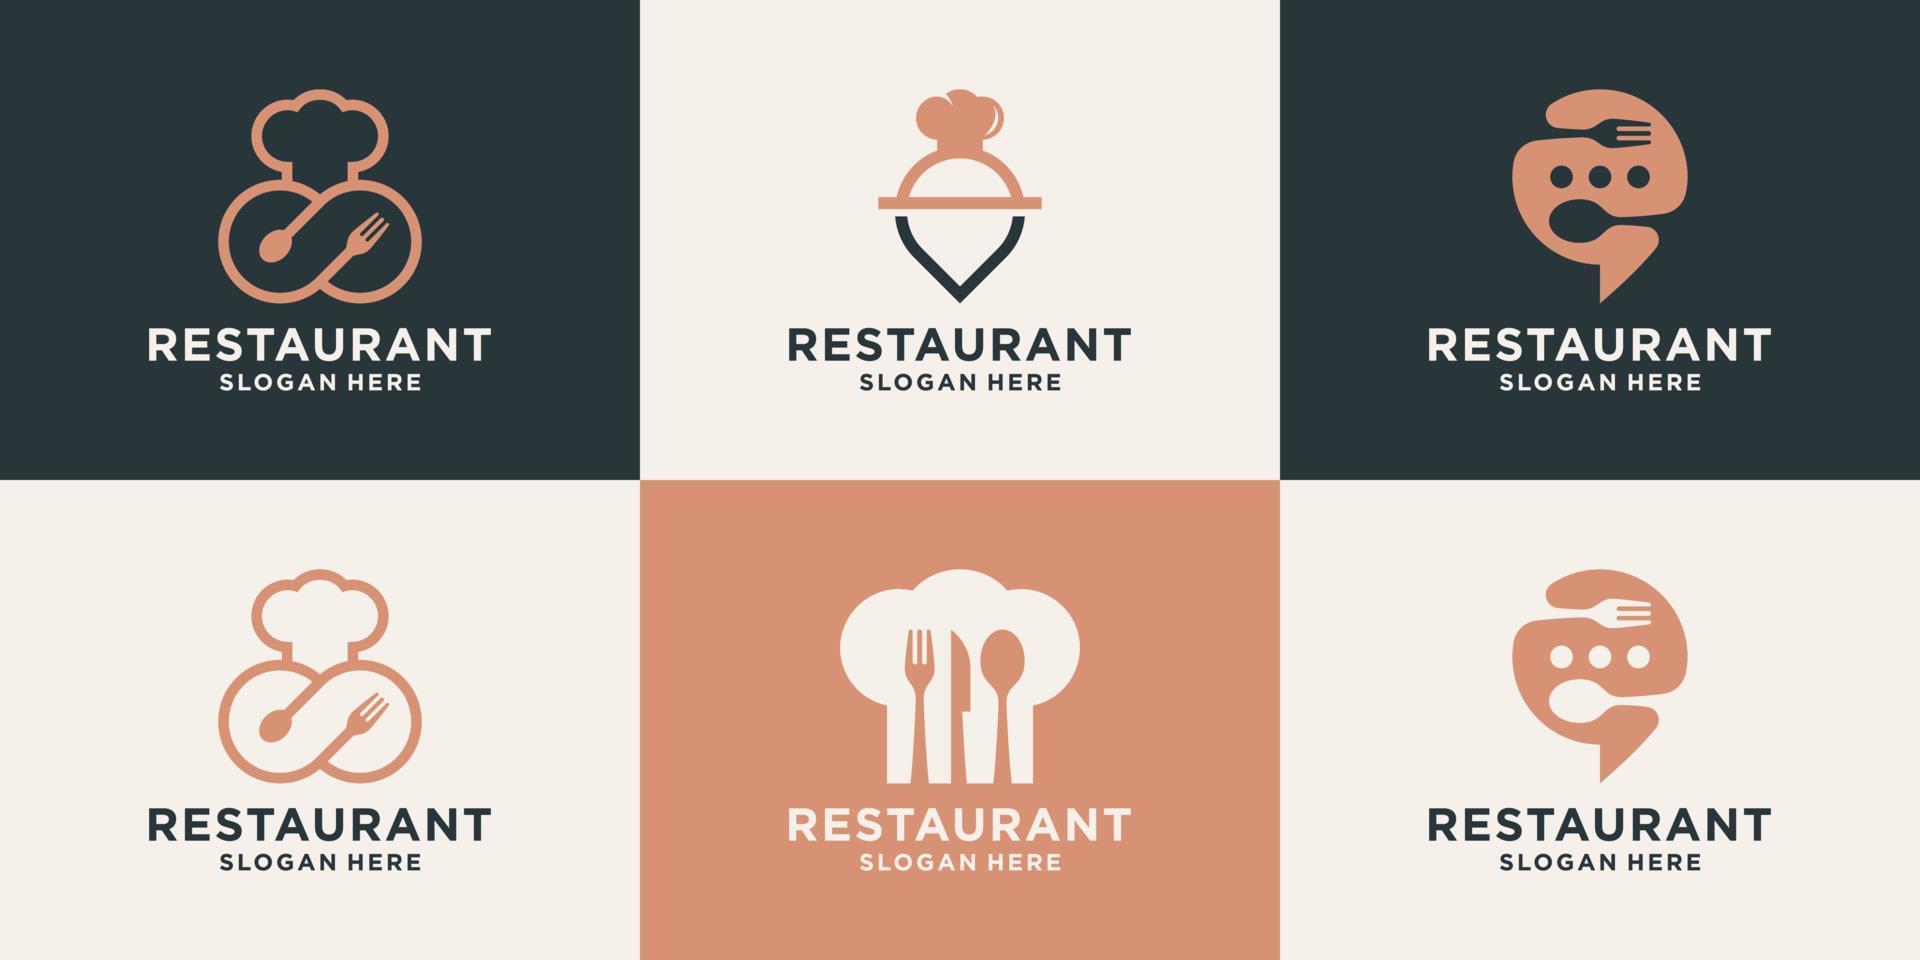 reeks van creatief restaurant logo ontwerp sjabloon. voedsel logo met combineren pictogrammen oneindigheid, pin plaats, praten, chef hoed, vork, lepel. vector